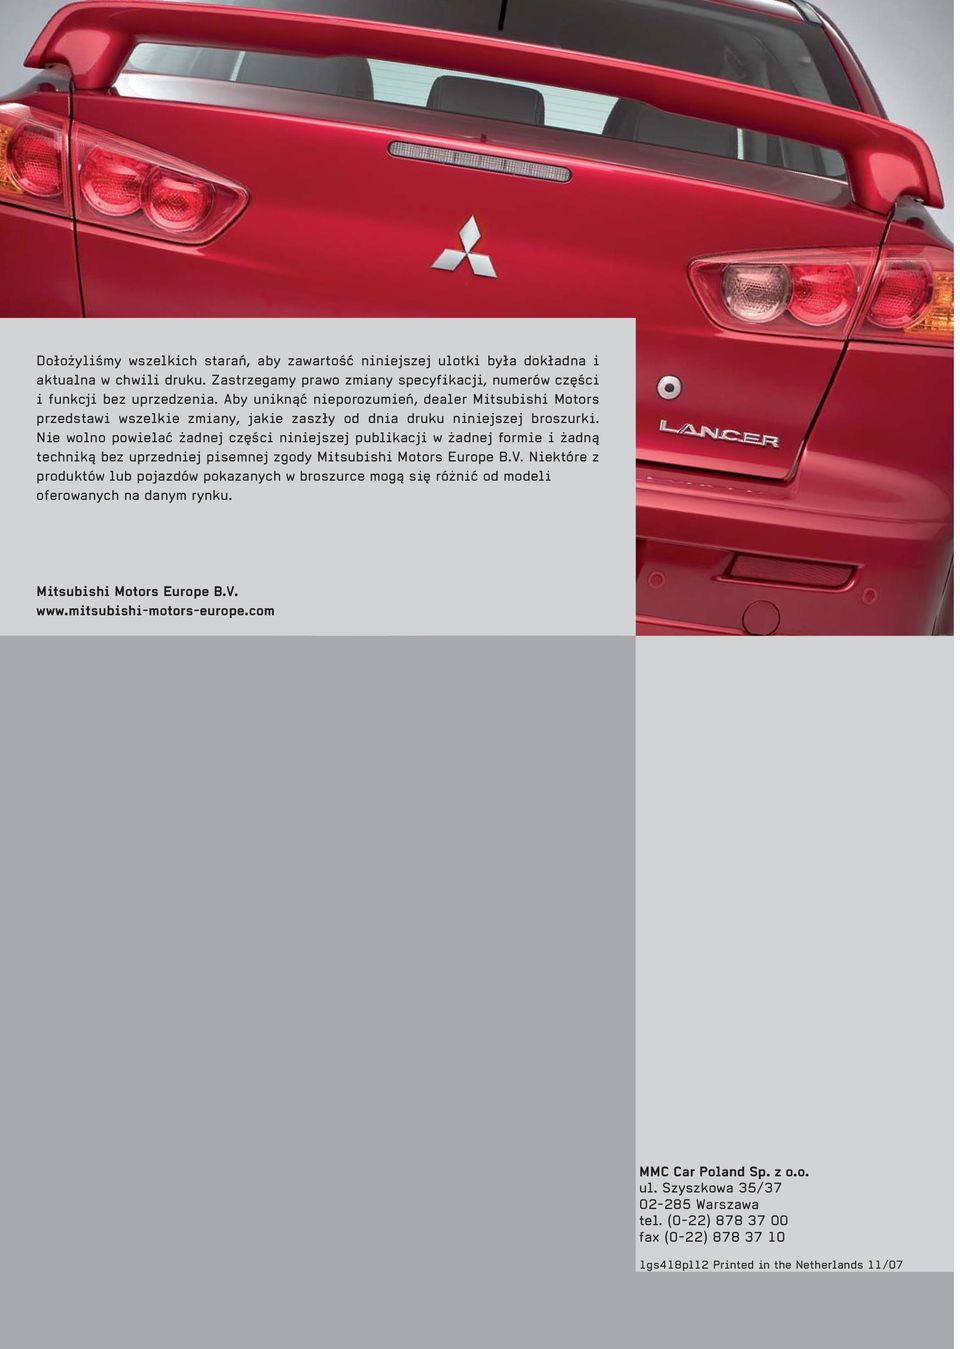 Nie wolno powielać żadnej części niniejszej publikacji w żadnej formie i żadną techniką bez uprzedniej pisemnej zgody Mitsubishi Motors Europe B.V.